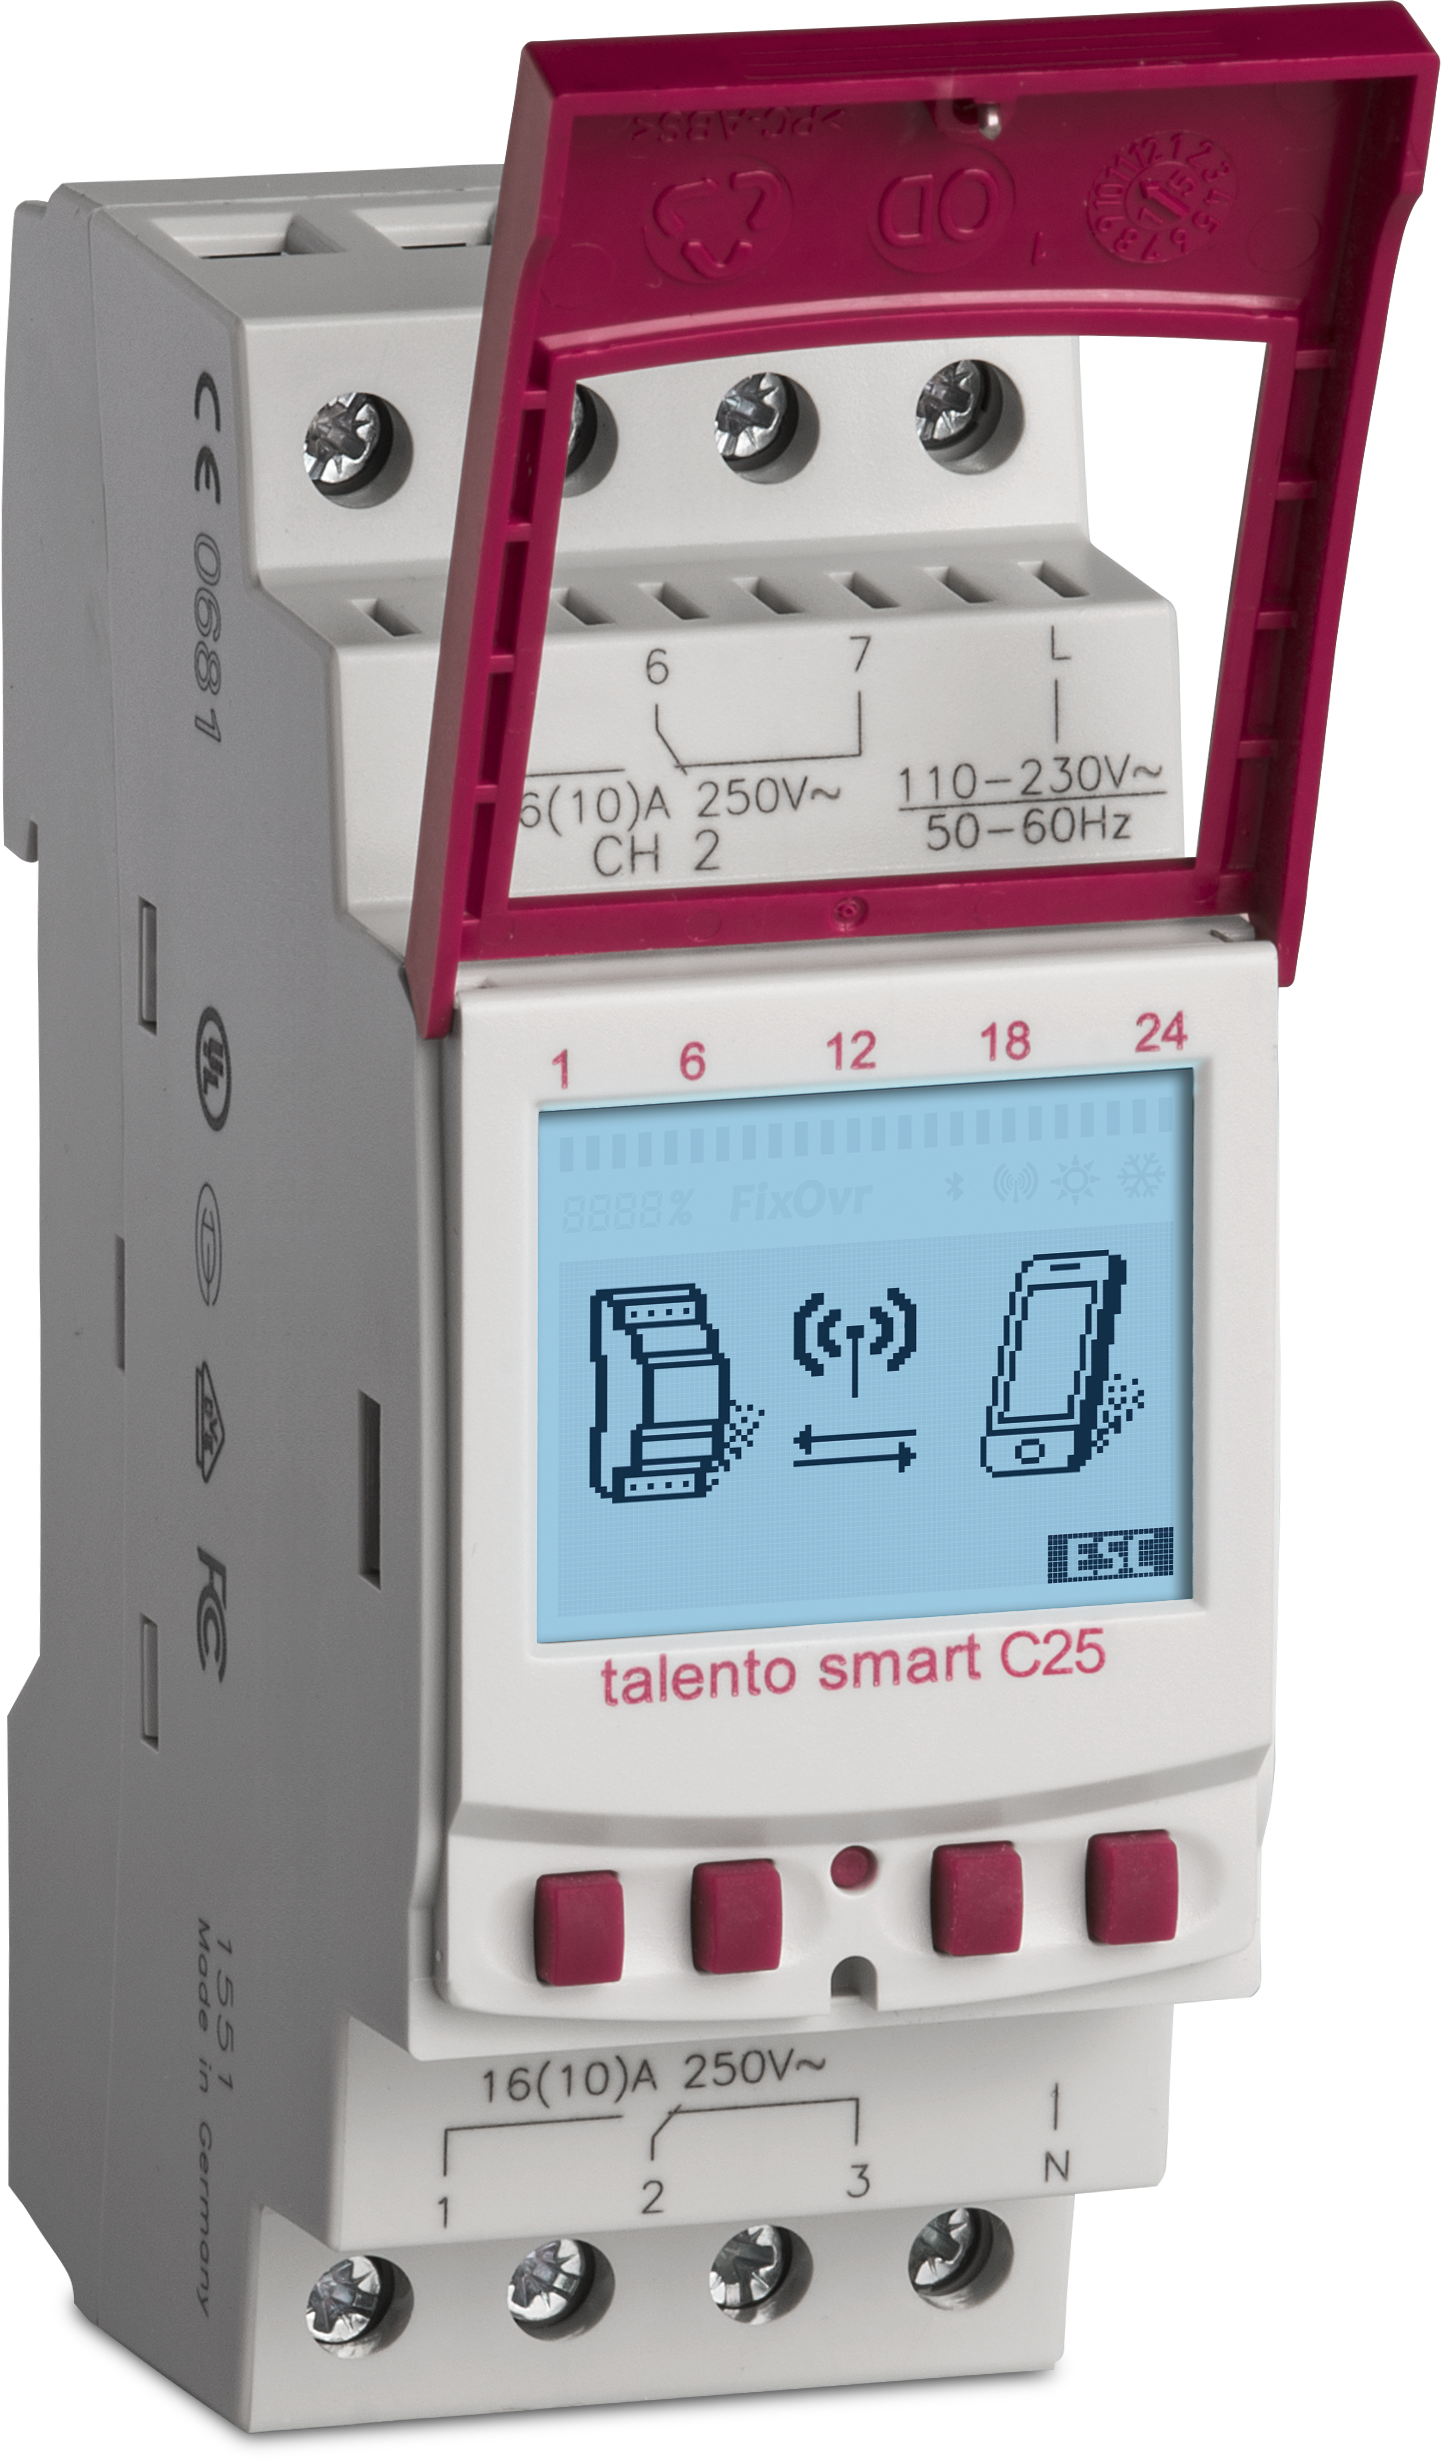 TALENTO SMART C25  реле, bluetooth, 2 канала, 500 ячеек памяти, 16A, 110/230V AC Функции: Астро/вкл/выкл/цикл/импульс/случайное вкл/выкл